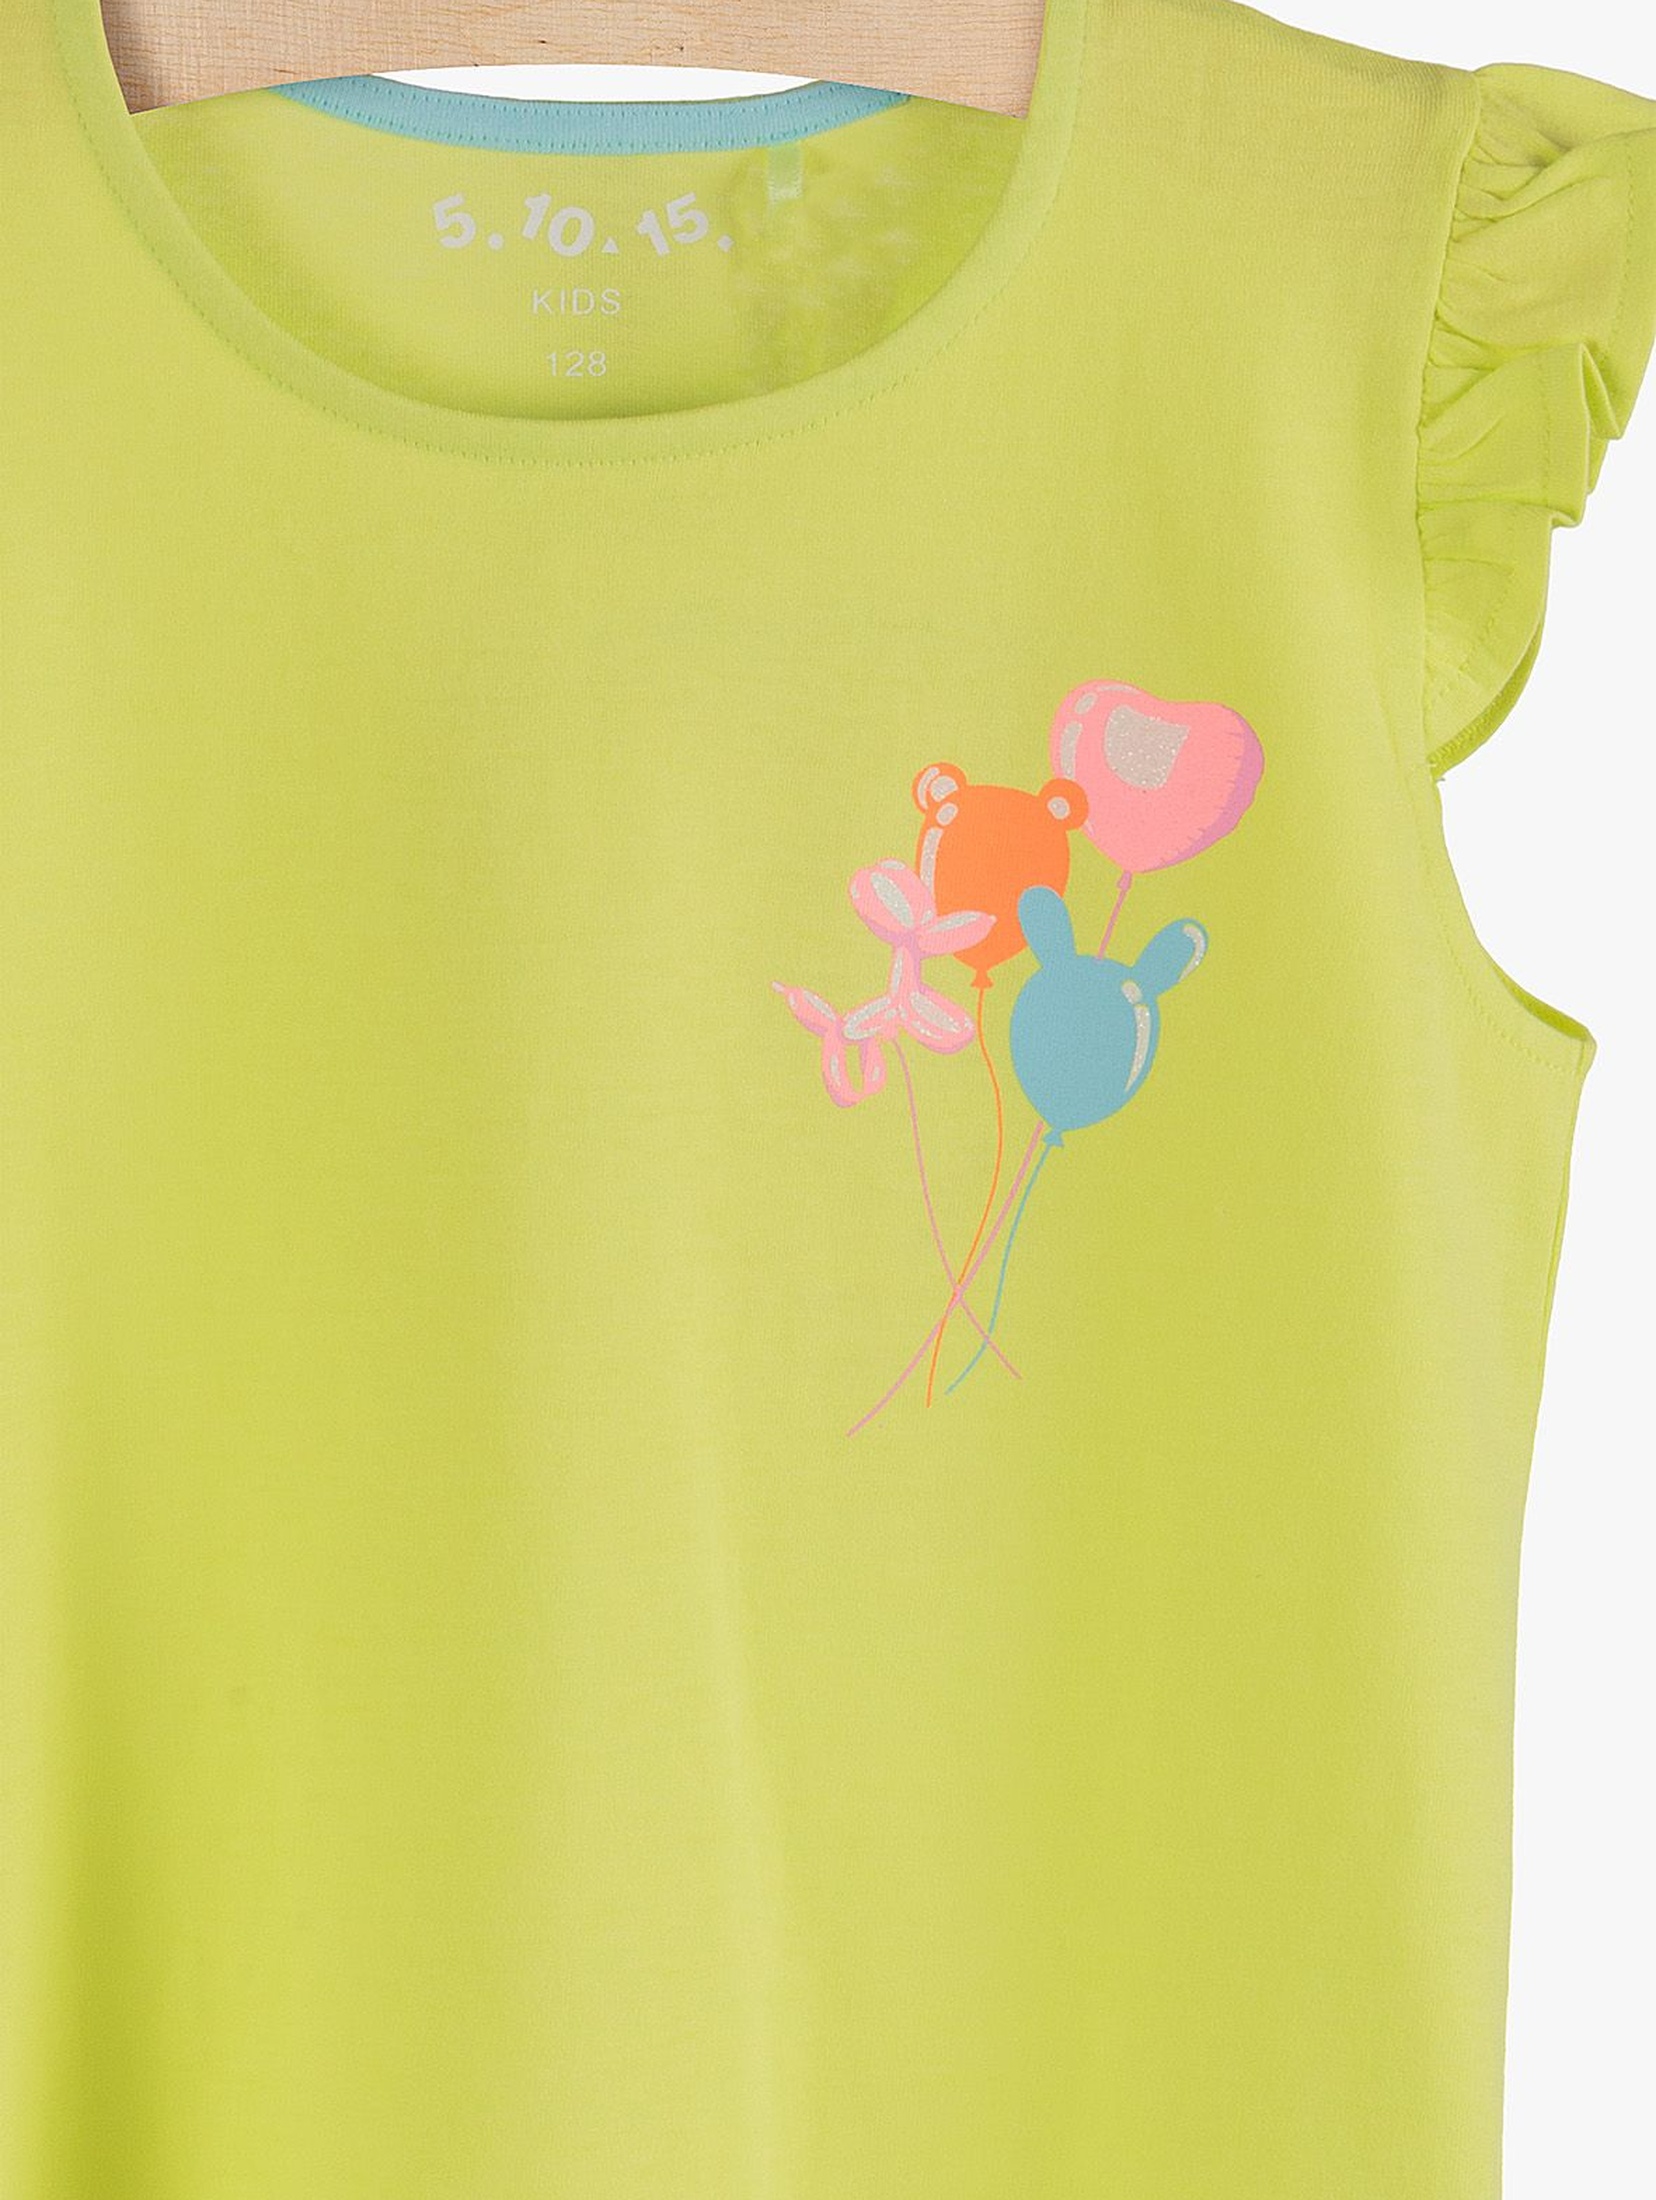 Bawełniany t-shirt dla dziewczynki- kolorowy nadruk